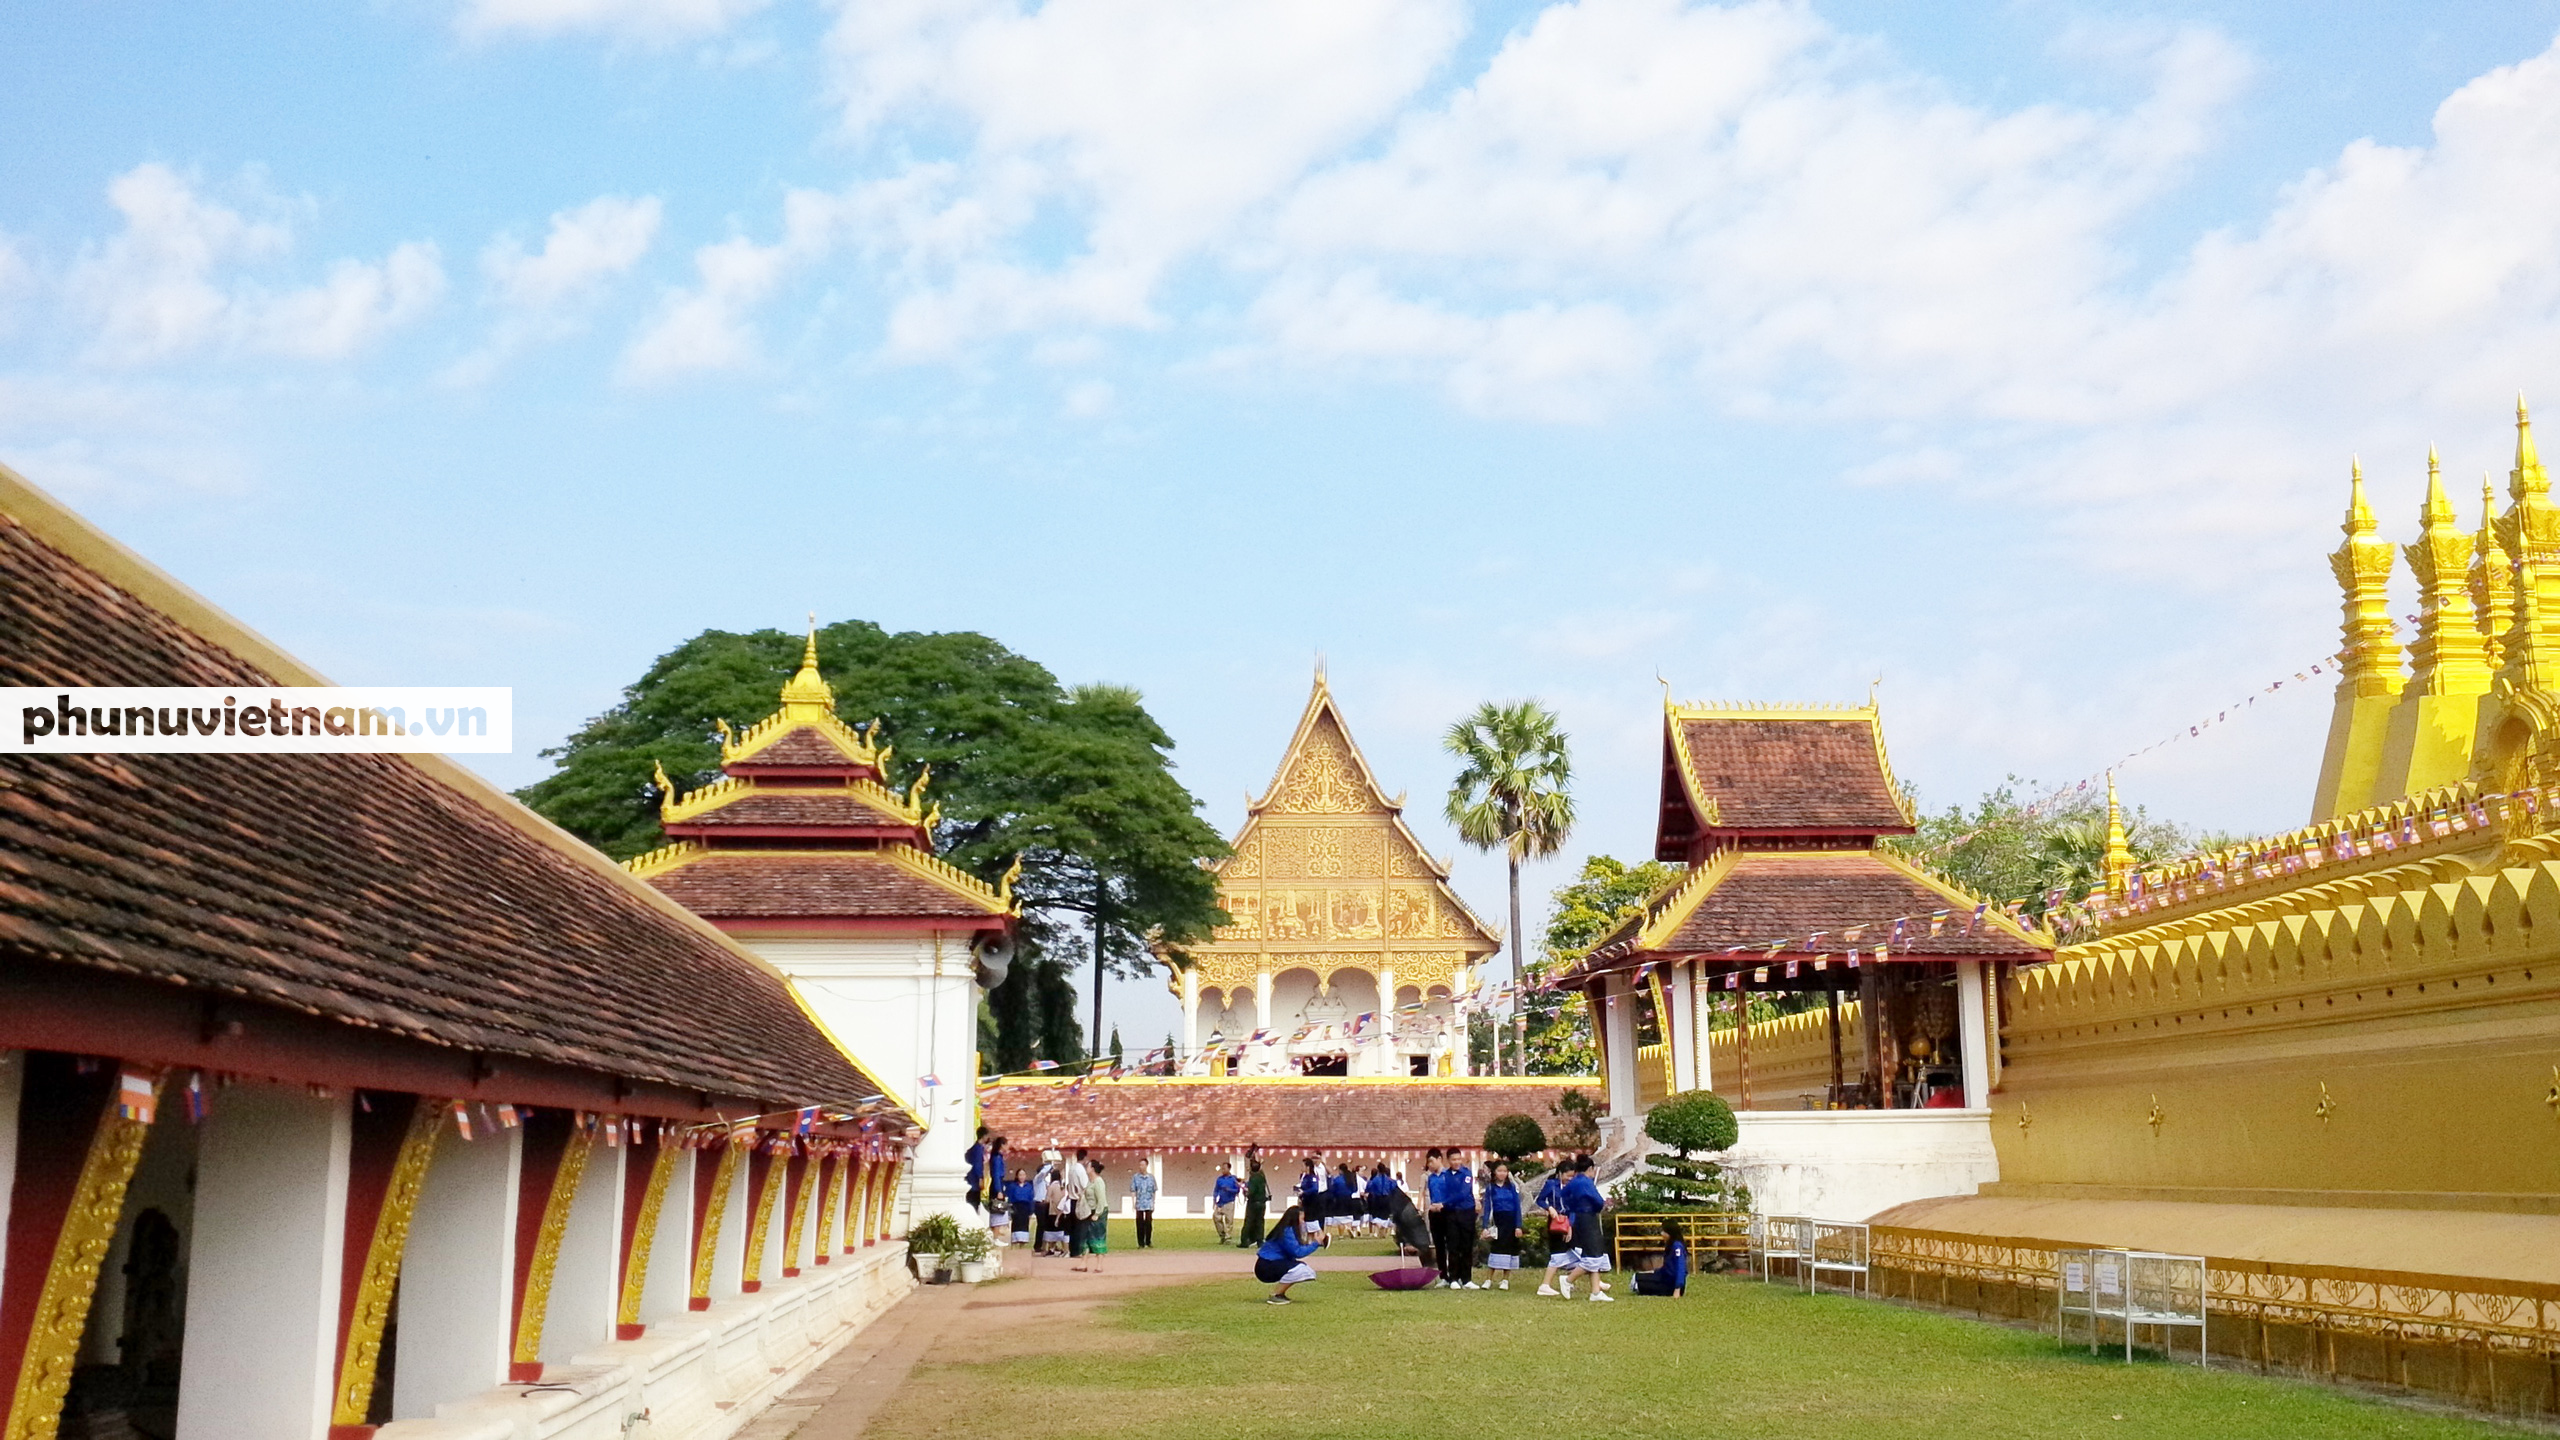 Chiêm ngưỡng ngôi tháp vàng lớn nhất của Lào, gần 500 tuổi tráng lệ giữa đất trời - Ảnh 4.